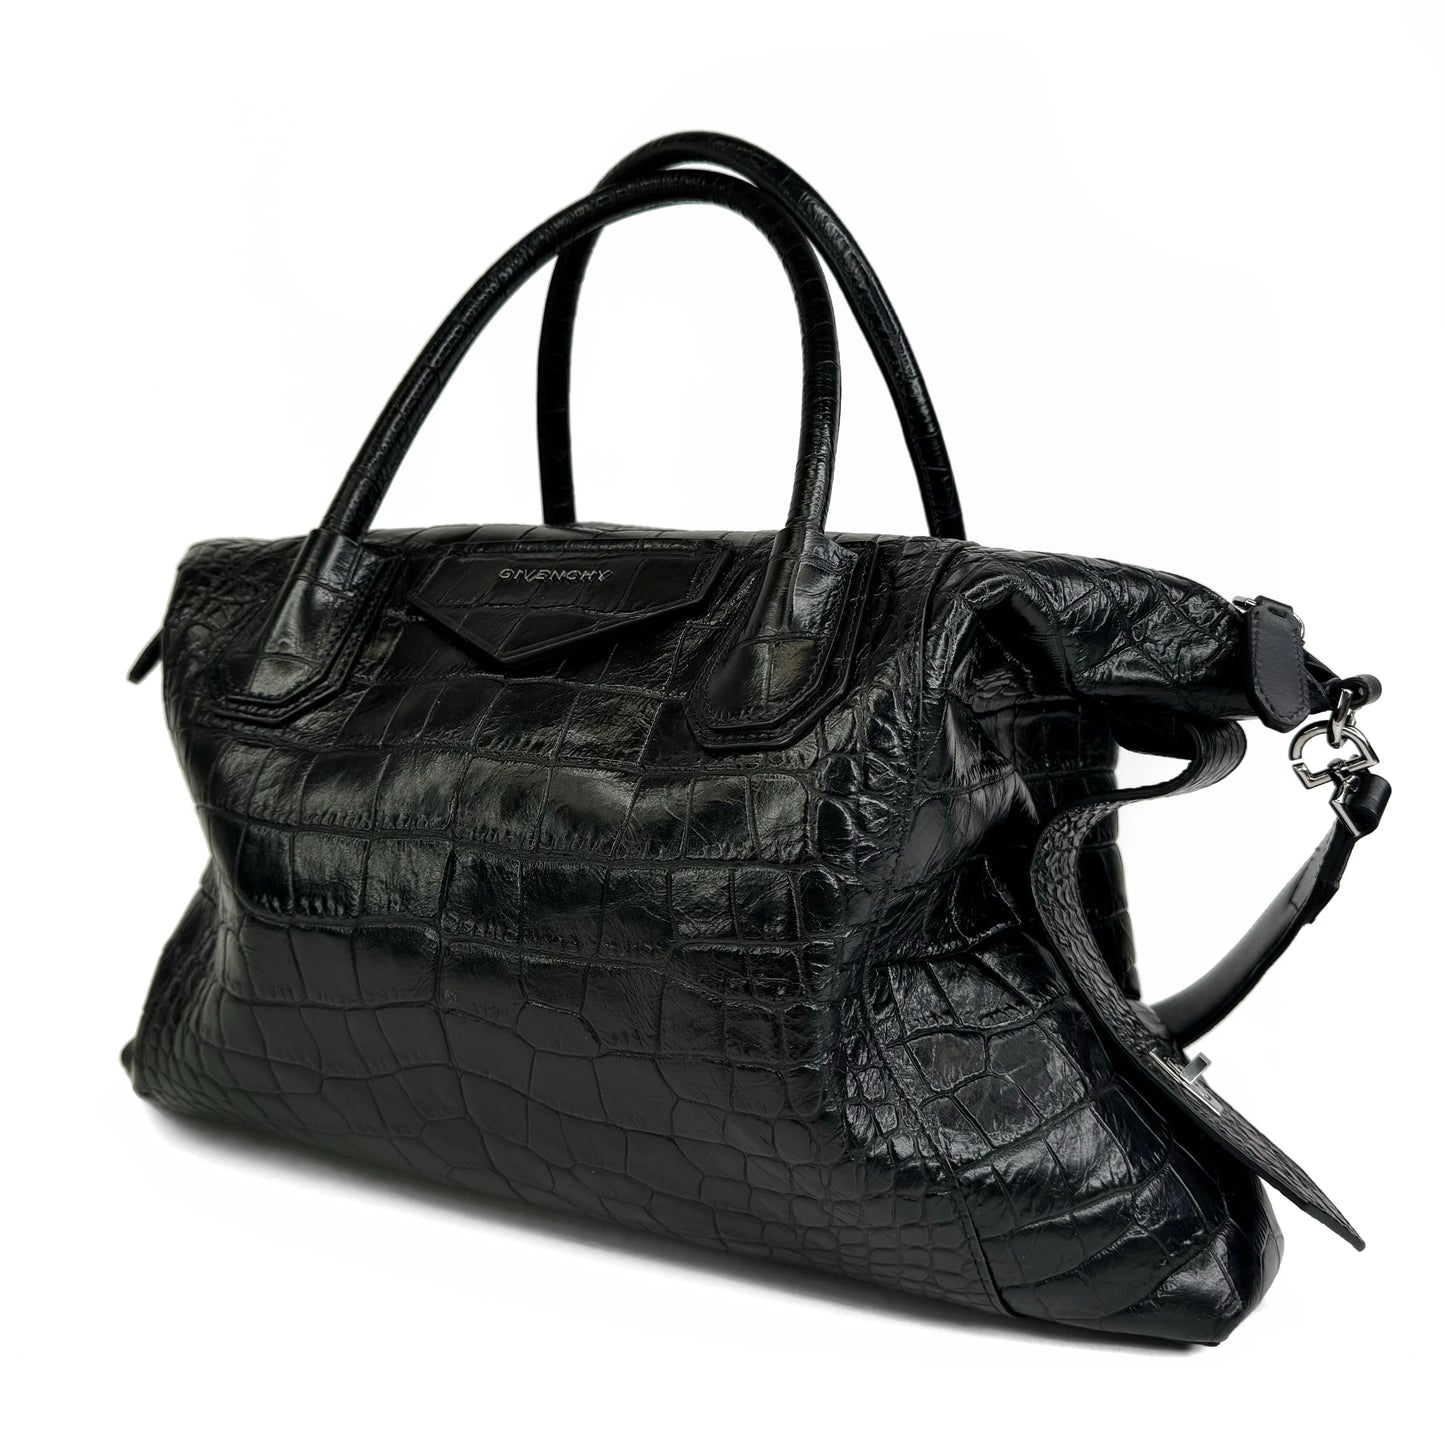 Givenchy Antigona Soft Croc Embossed Medium Bag